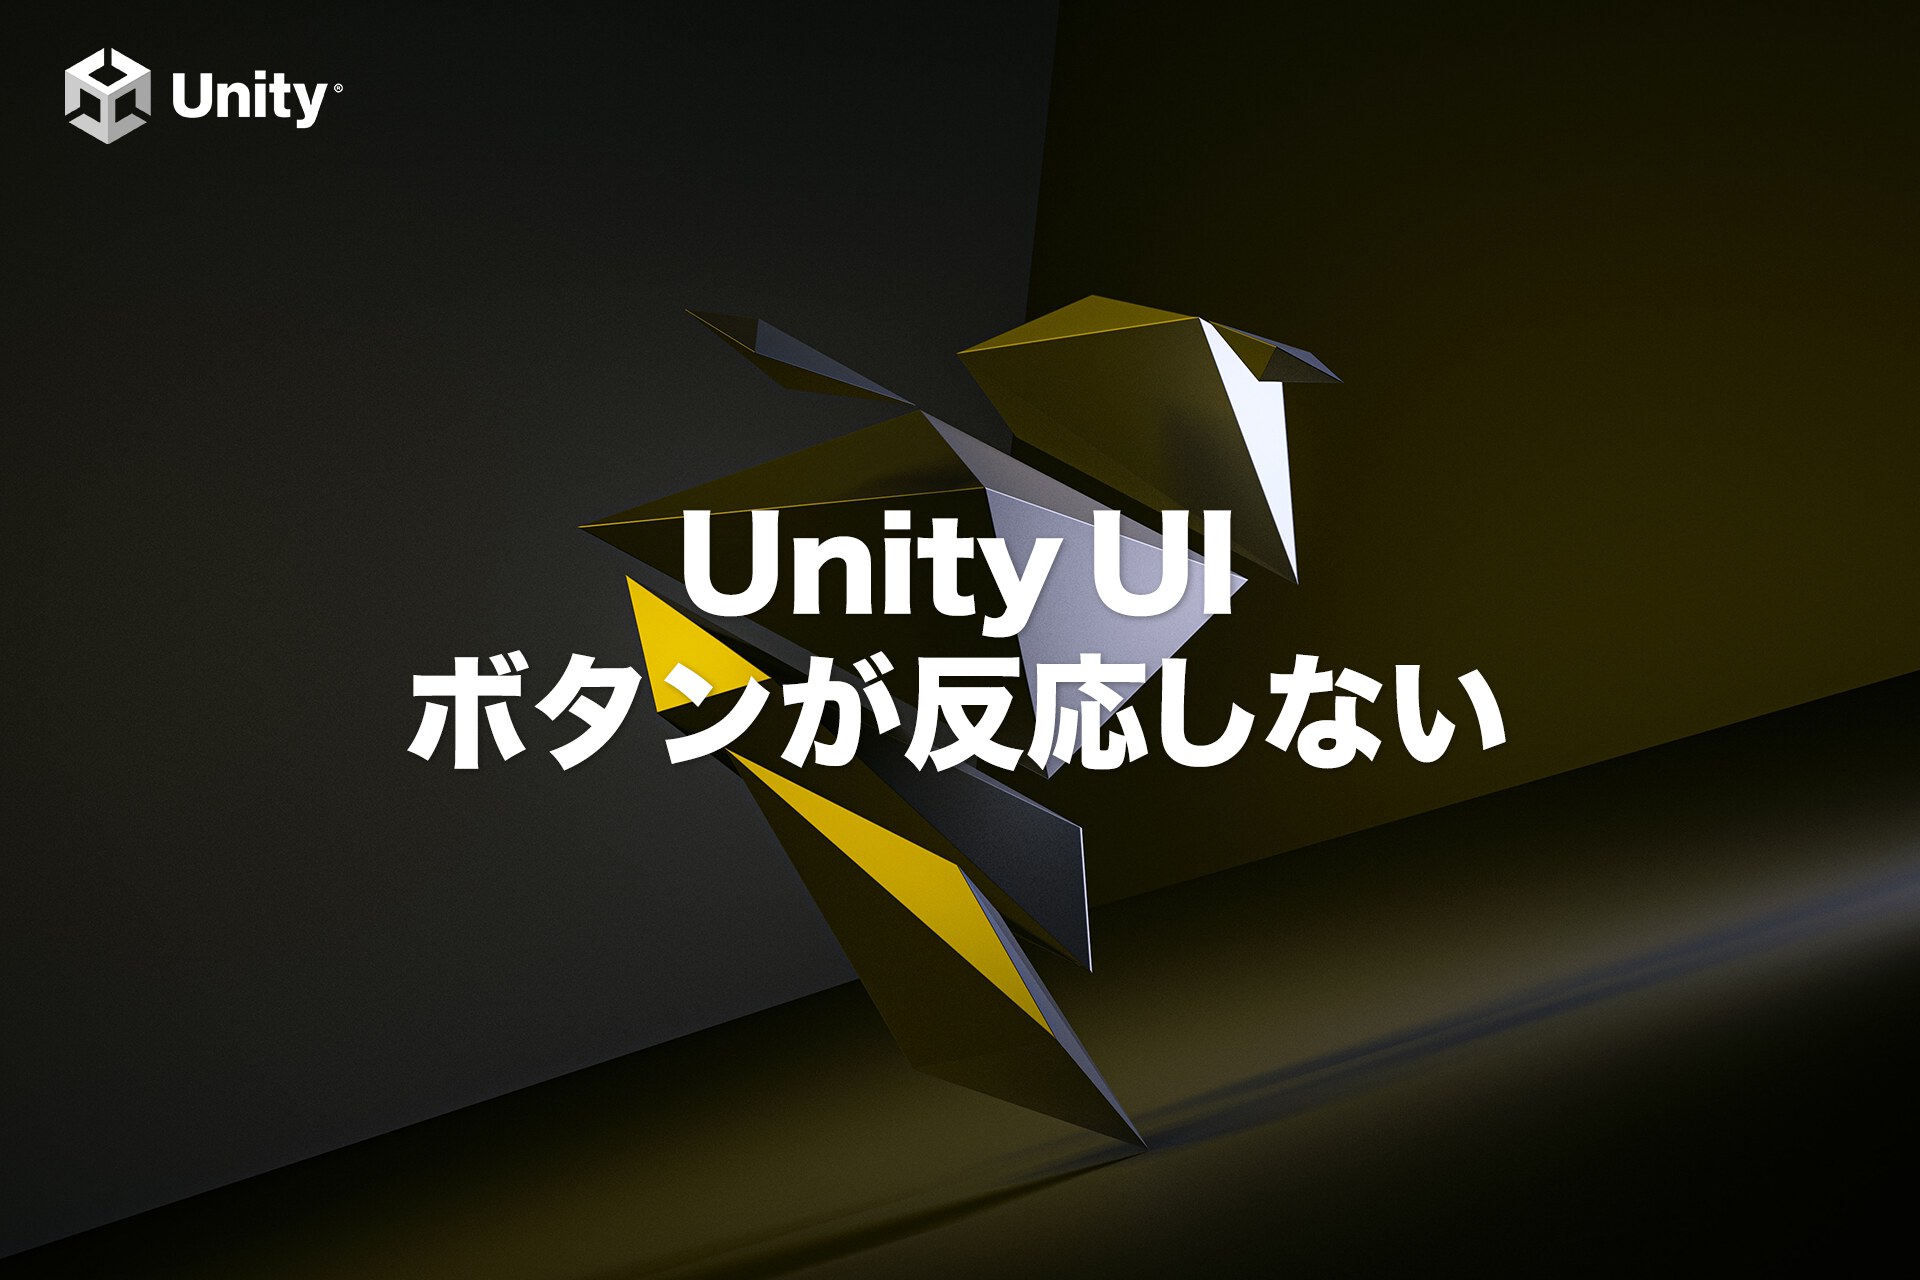 【Unity UI】ボタンが反応しない原因をランキング形式で紹介【保存版】